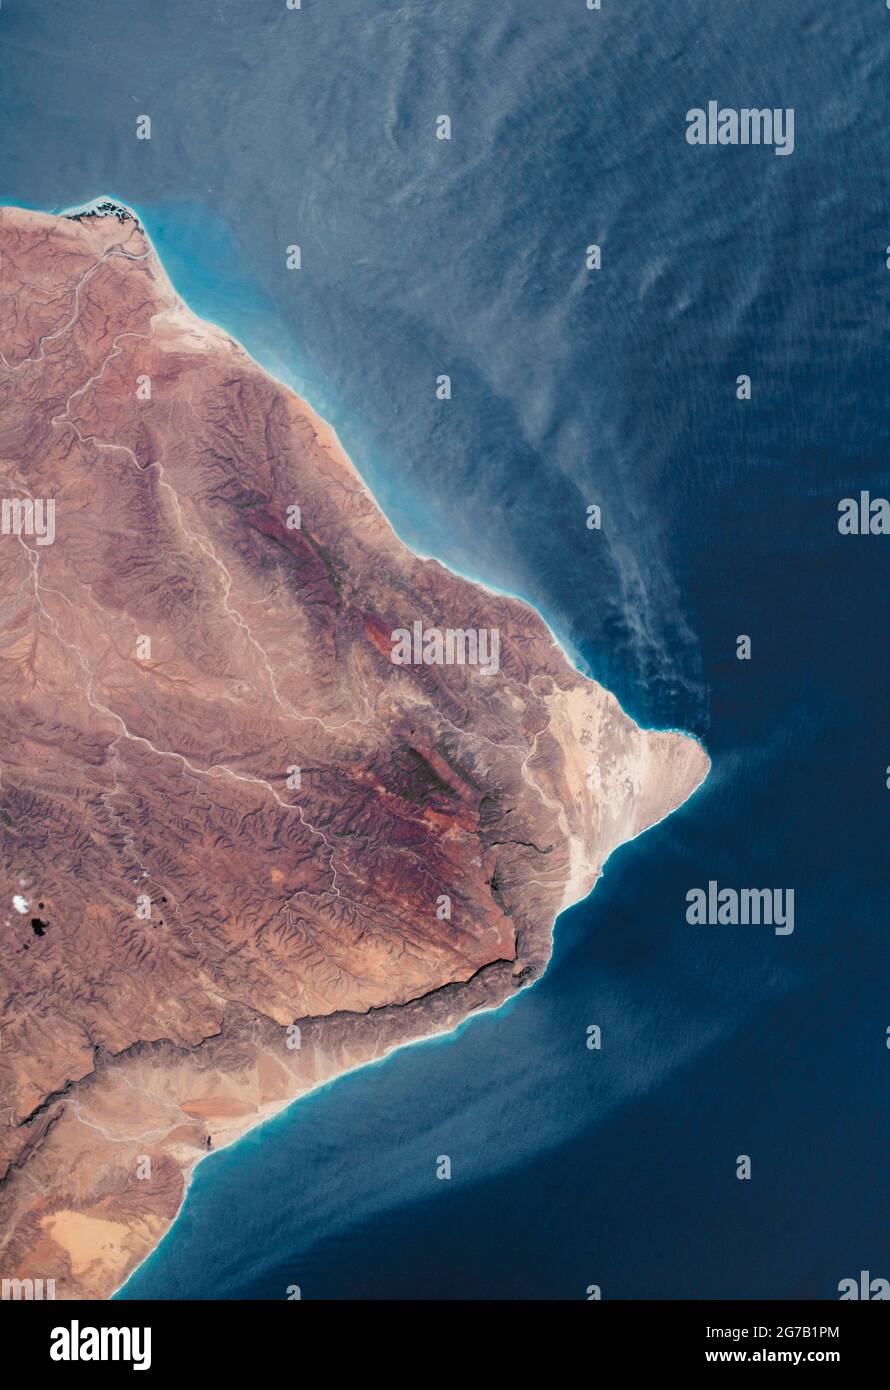 El Cuerno de África, Somalia fotografiado desde la Estación Espacial Internacional (EEI). La parte más oriental de África. El RAAS Caseyr, conocido históricamente como Cabo Guardafui, se encuentra en el cruce entre el Golfo de Adén y el Océano Índico. La costa es escarpada, con montañas, ríos secos, un pequeño delta y acantilados escarpados que proyectan sombras en el paisaje. Junio 2018. Una versión optimizada y mejorada digitalmente de una imagen de NASA / crédito de la NASA Foto de stock